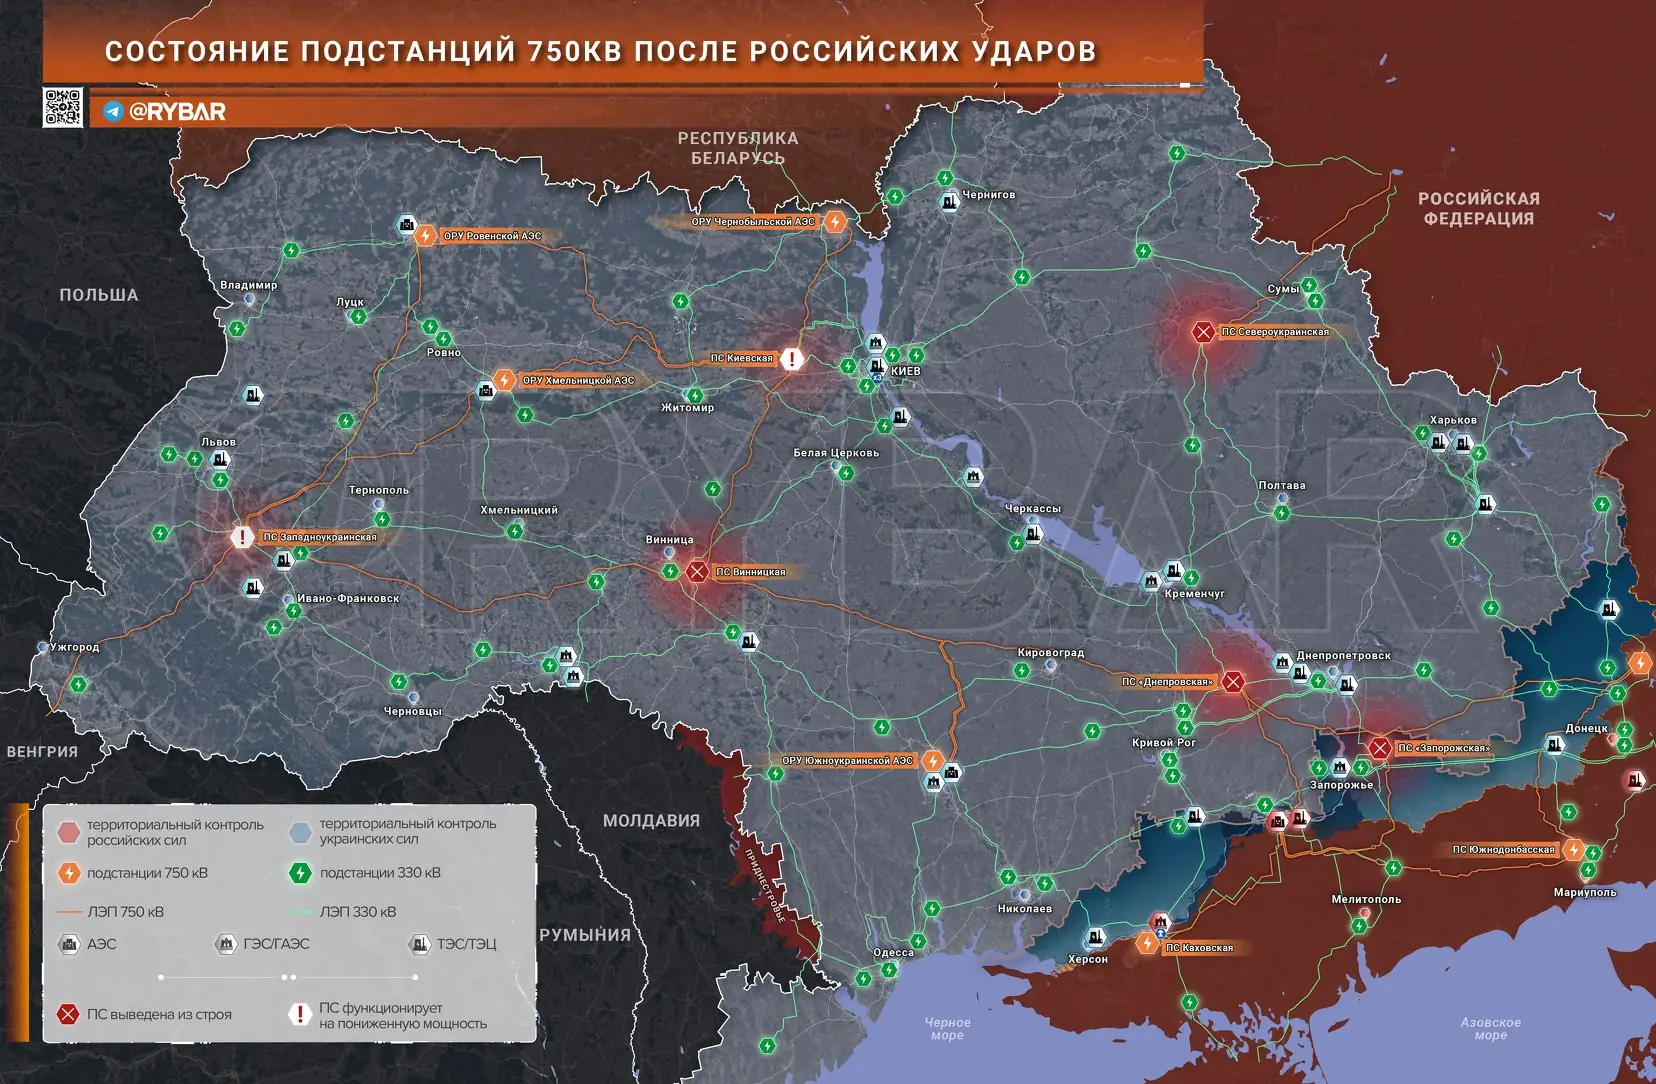 Что случилось с украинскими подстанциями после ударов ВС РФ?